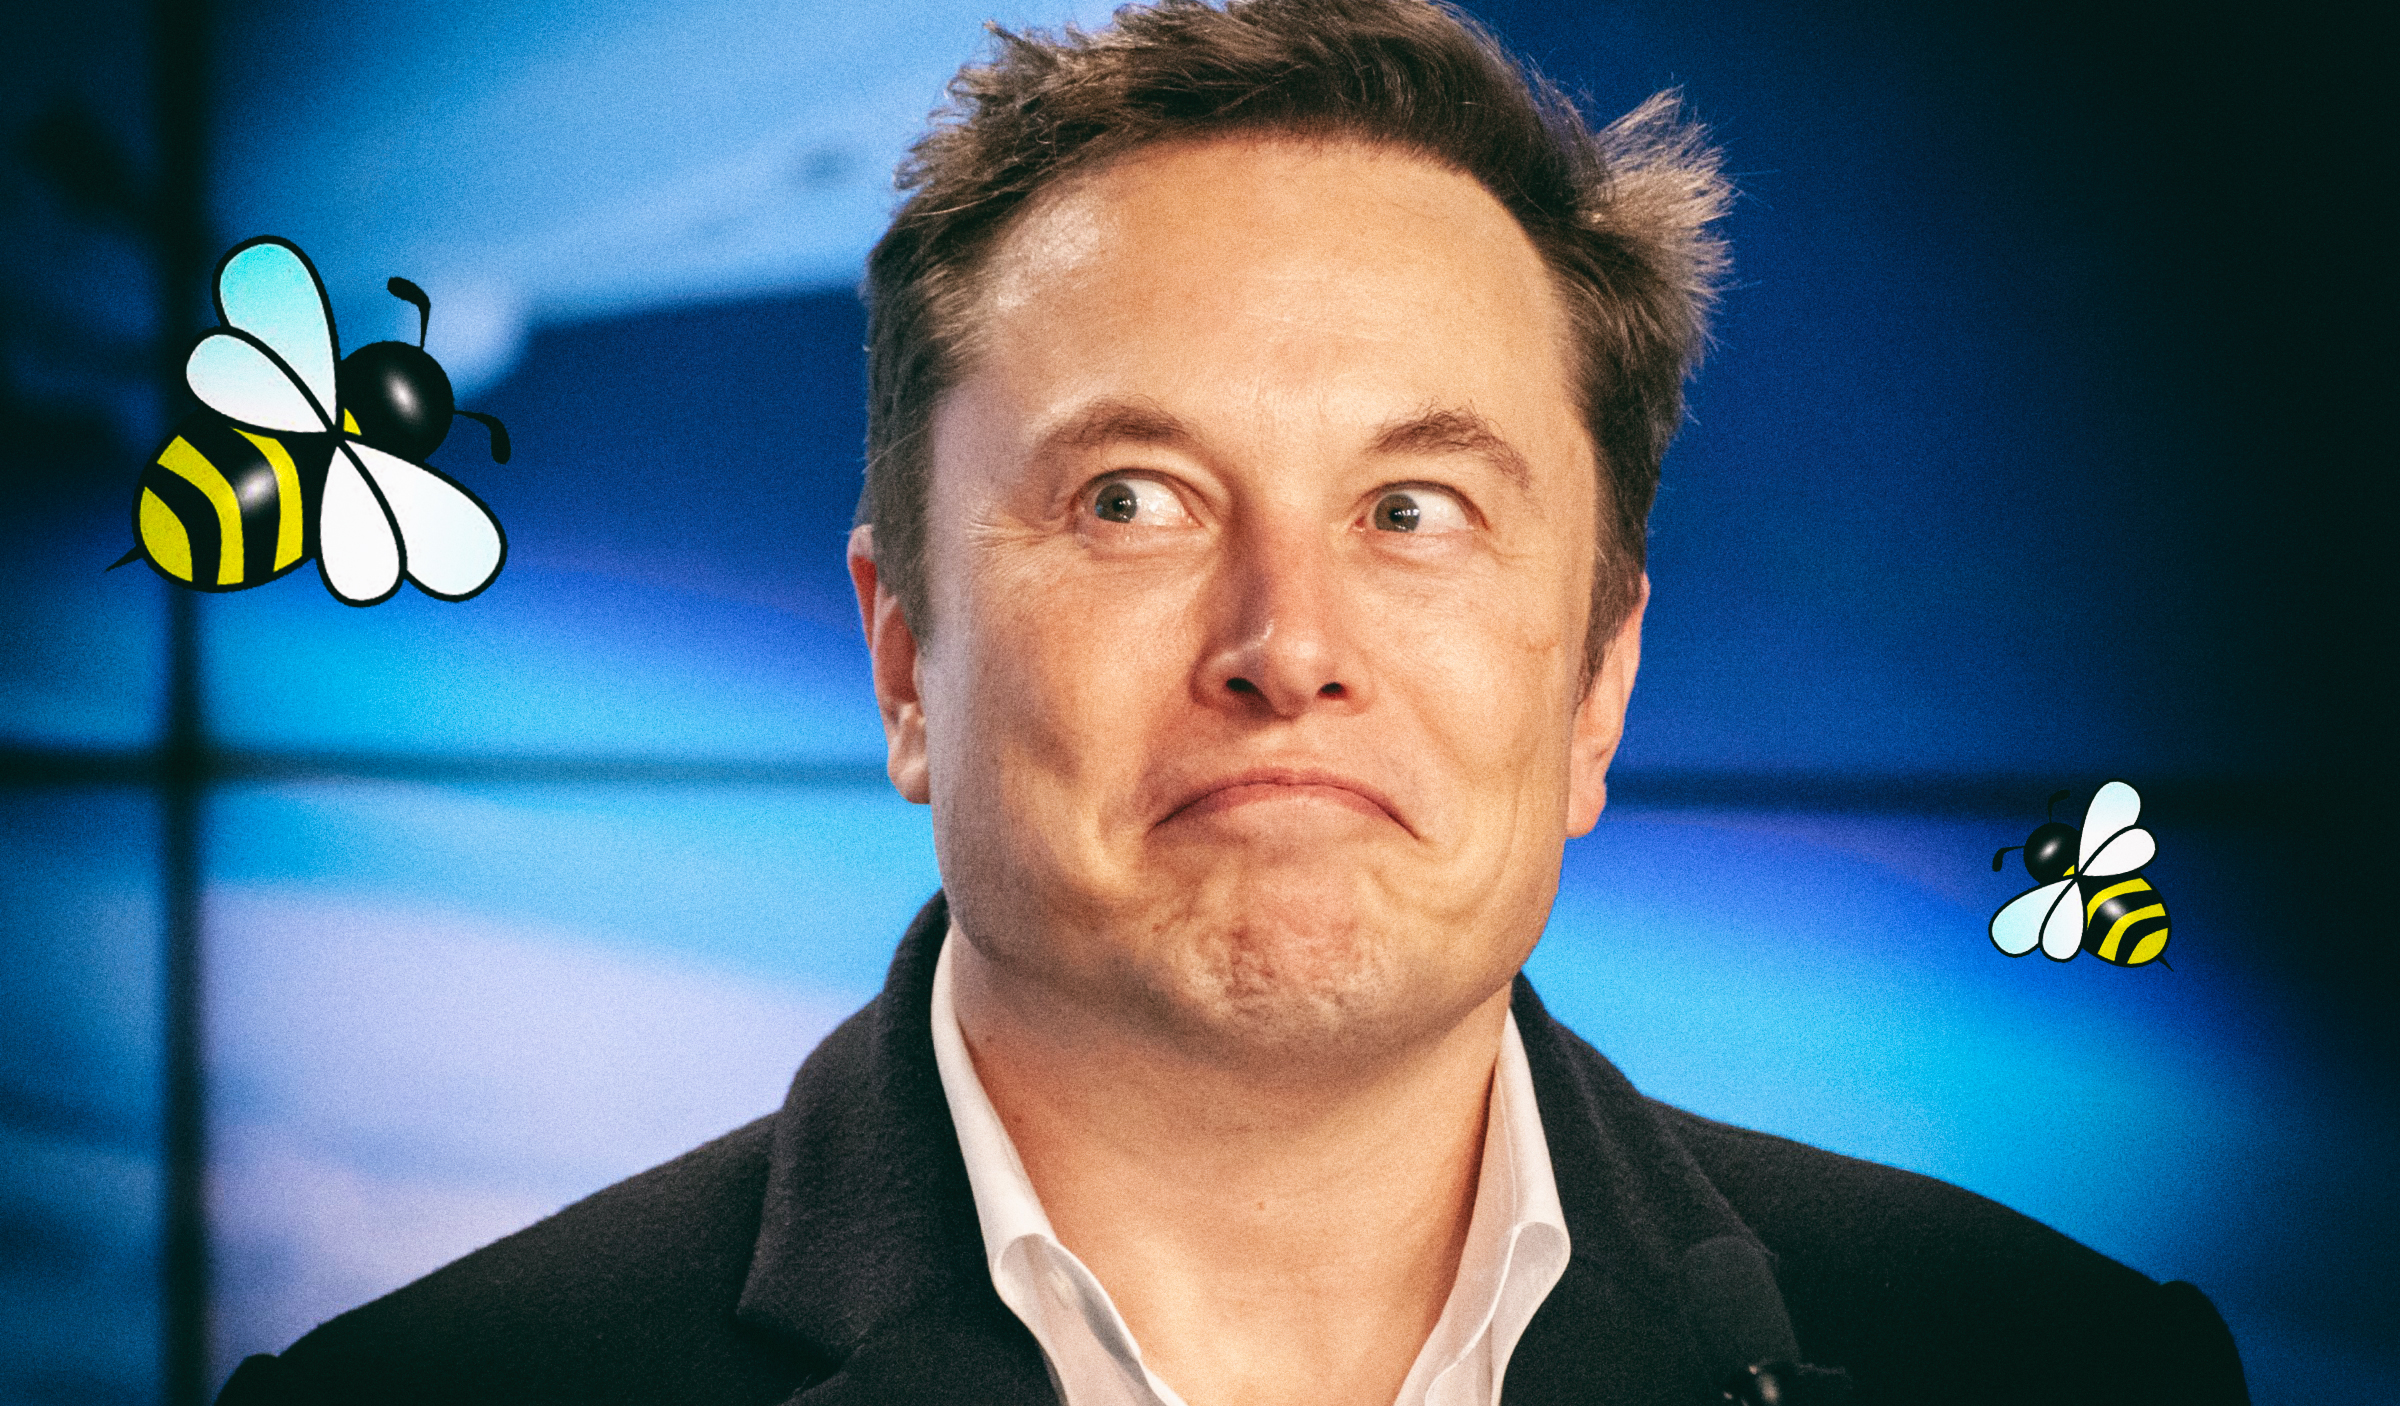 Похоже, что странными твитами про пчел Илон Маск анонсирует новый электромобиль